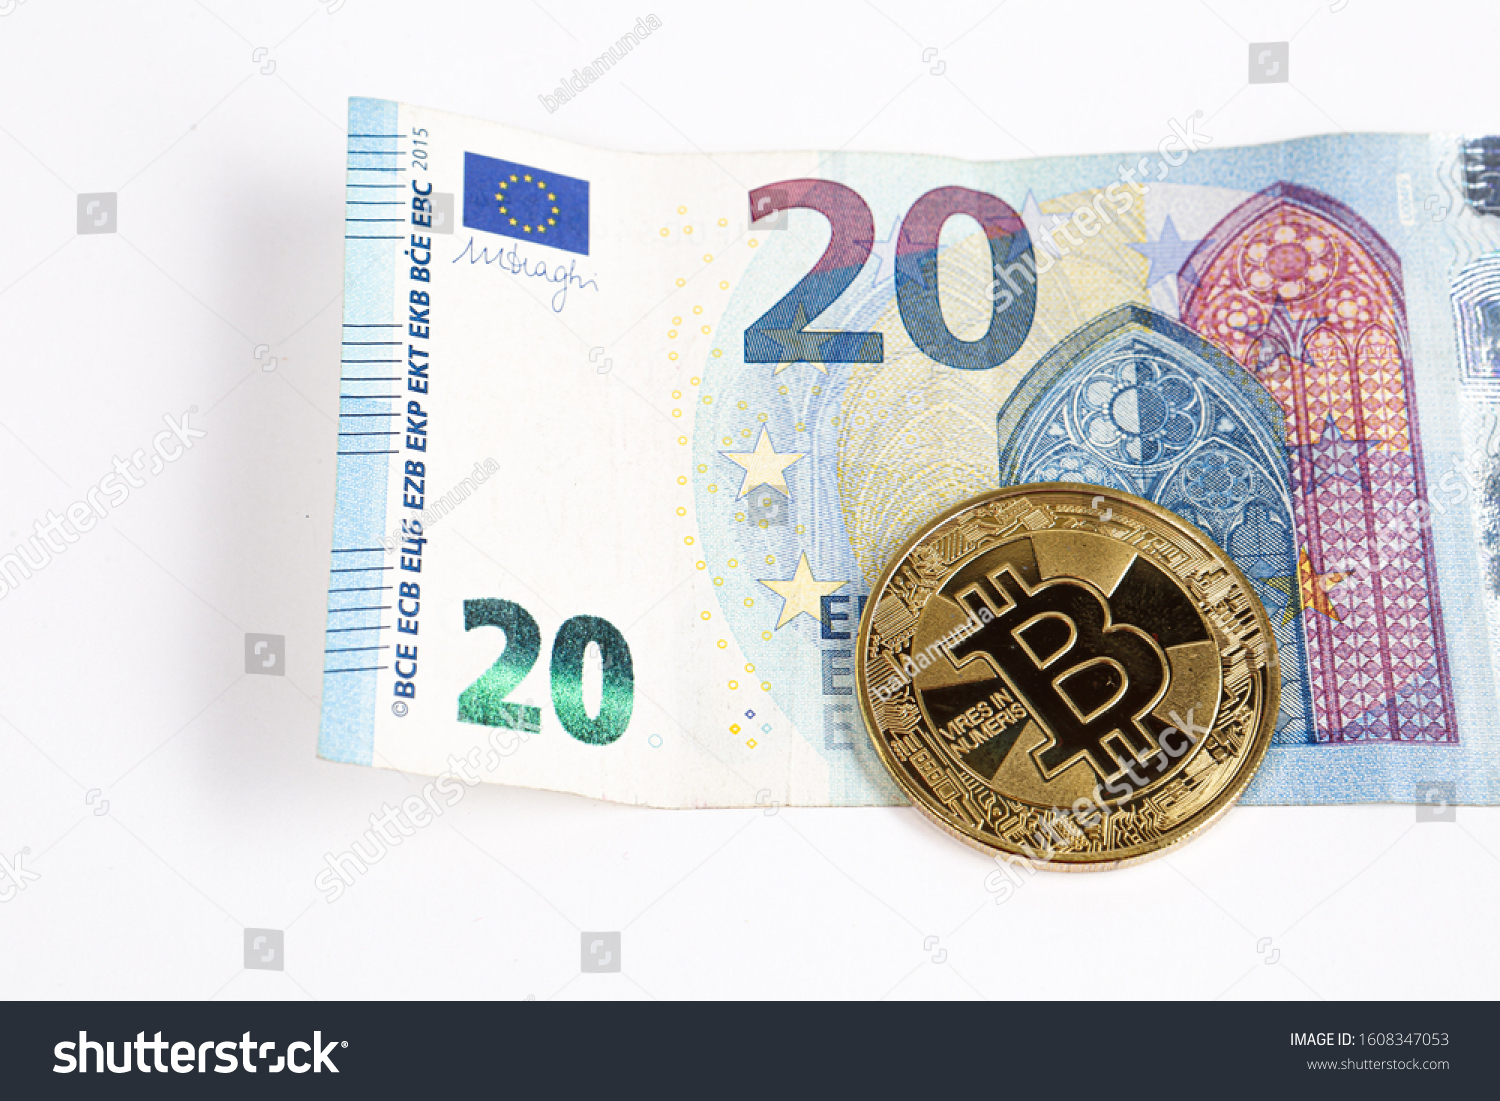 20 euros in bitcoins buy